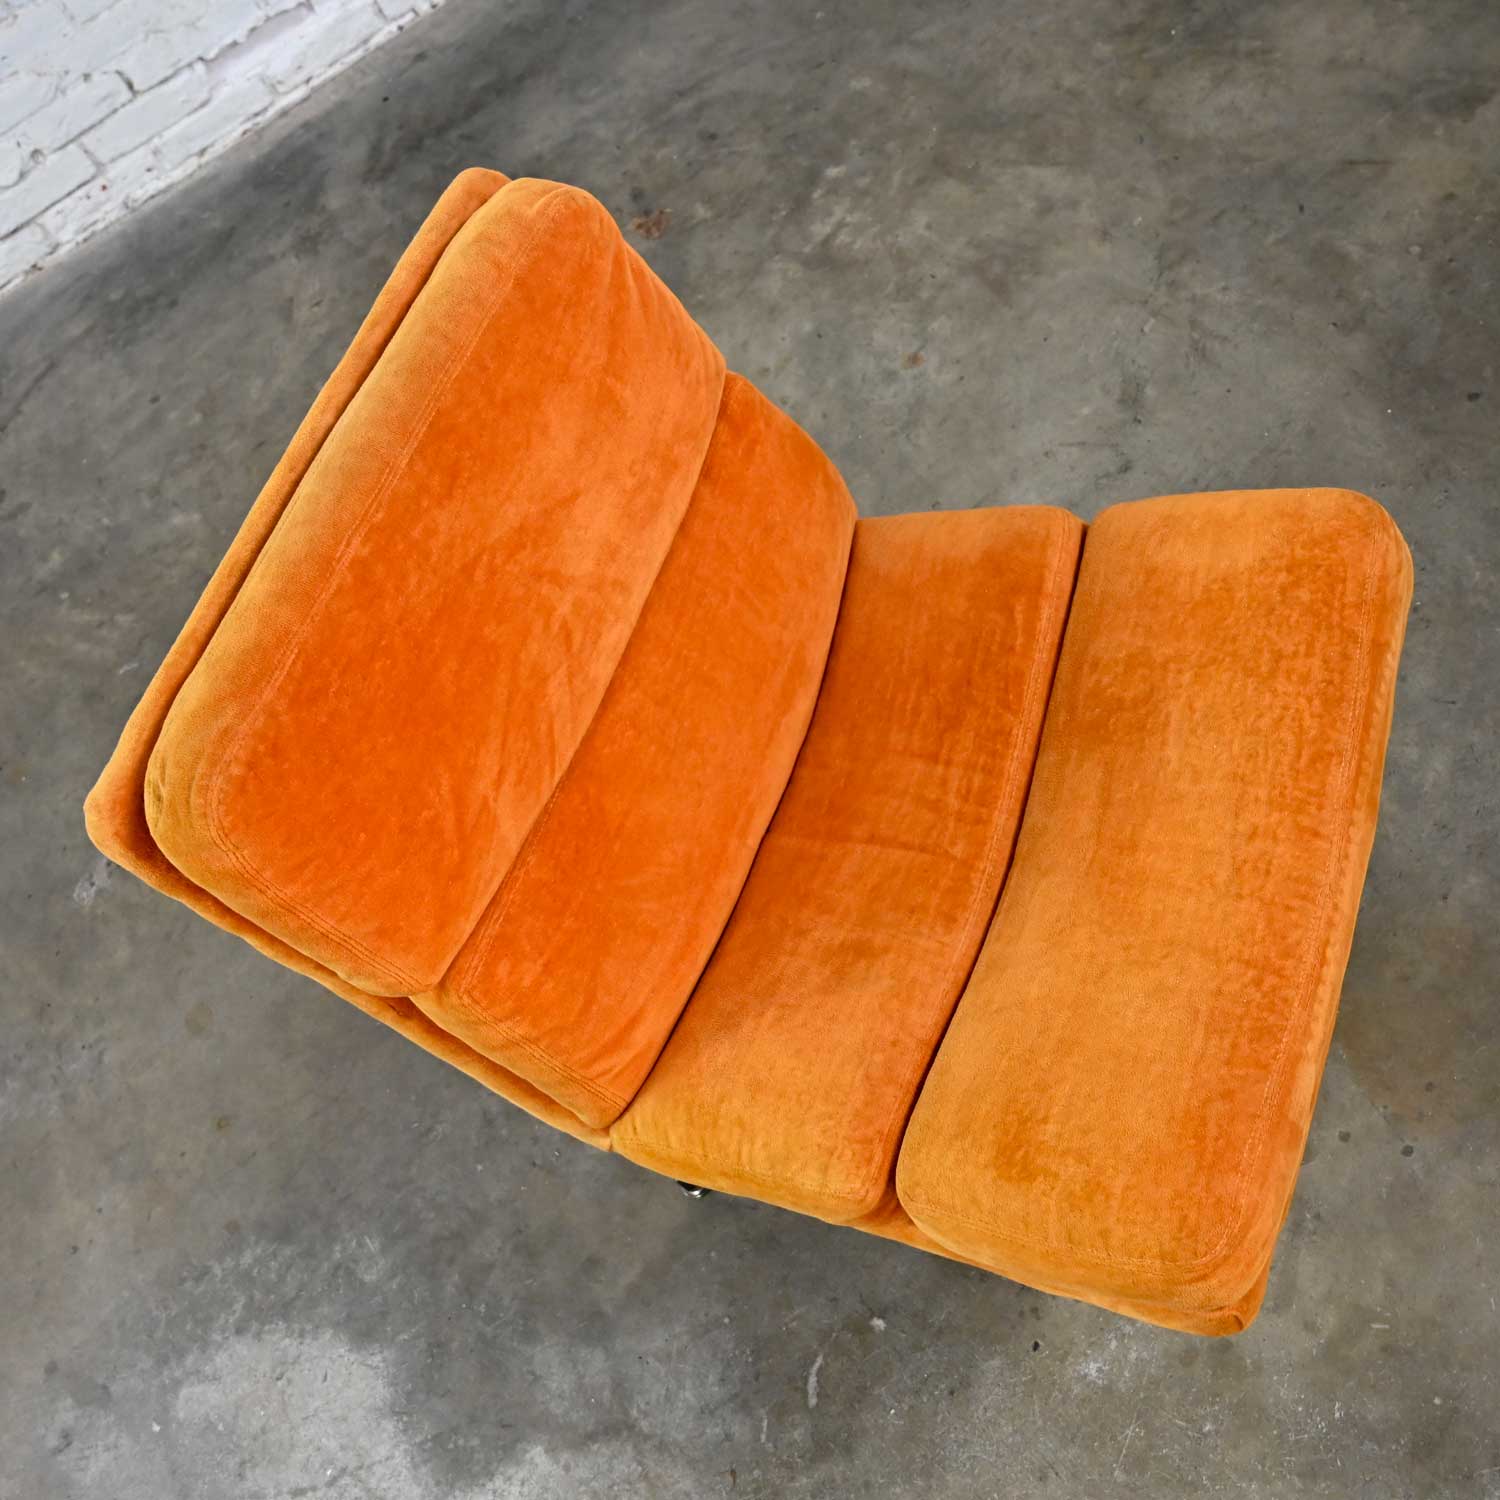 Modern Swivel Slipper Chair Orange Brushed Chenille & 4 Prong Chrome Base